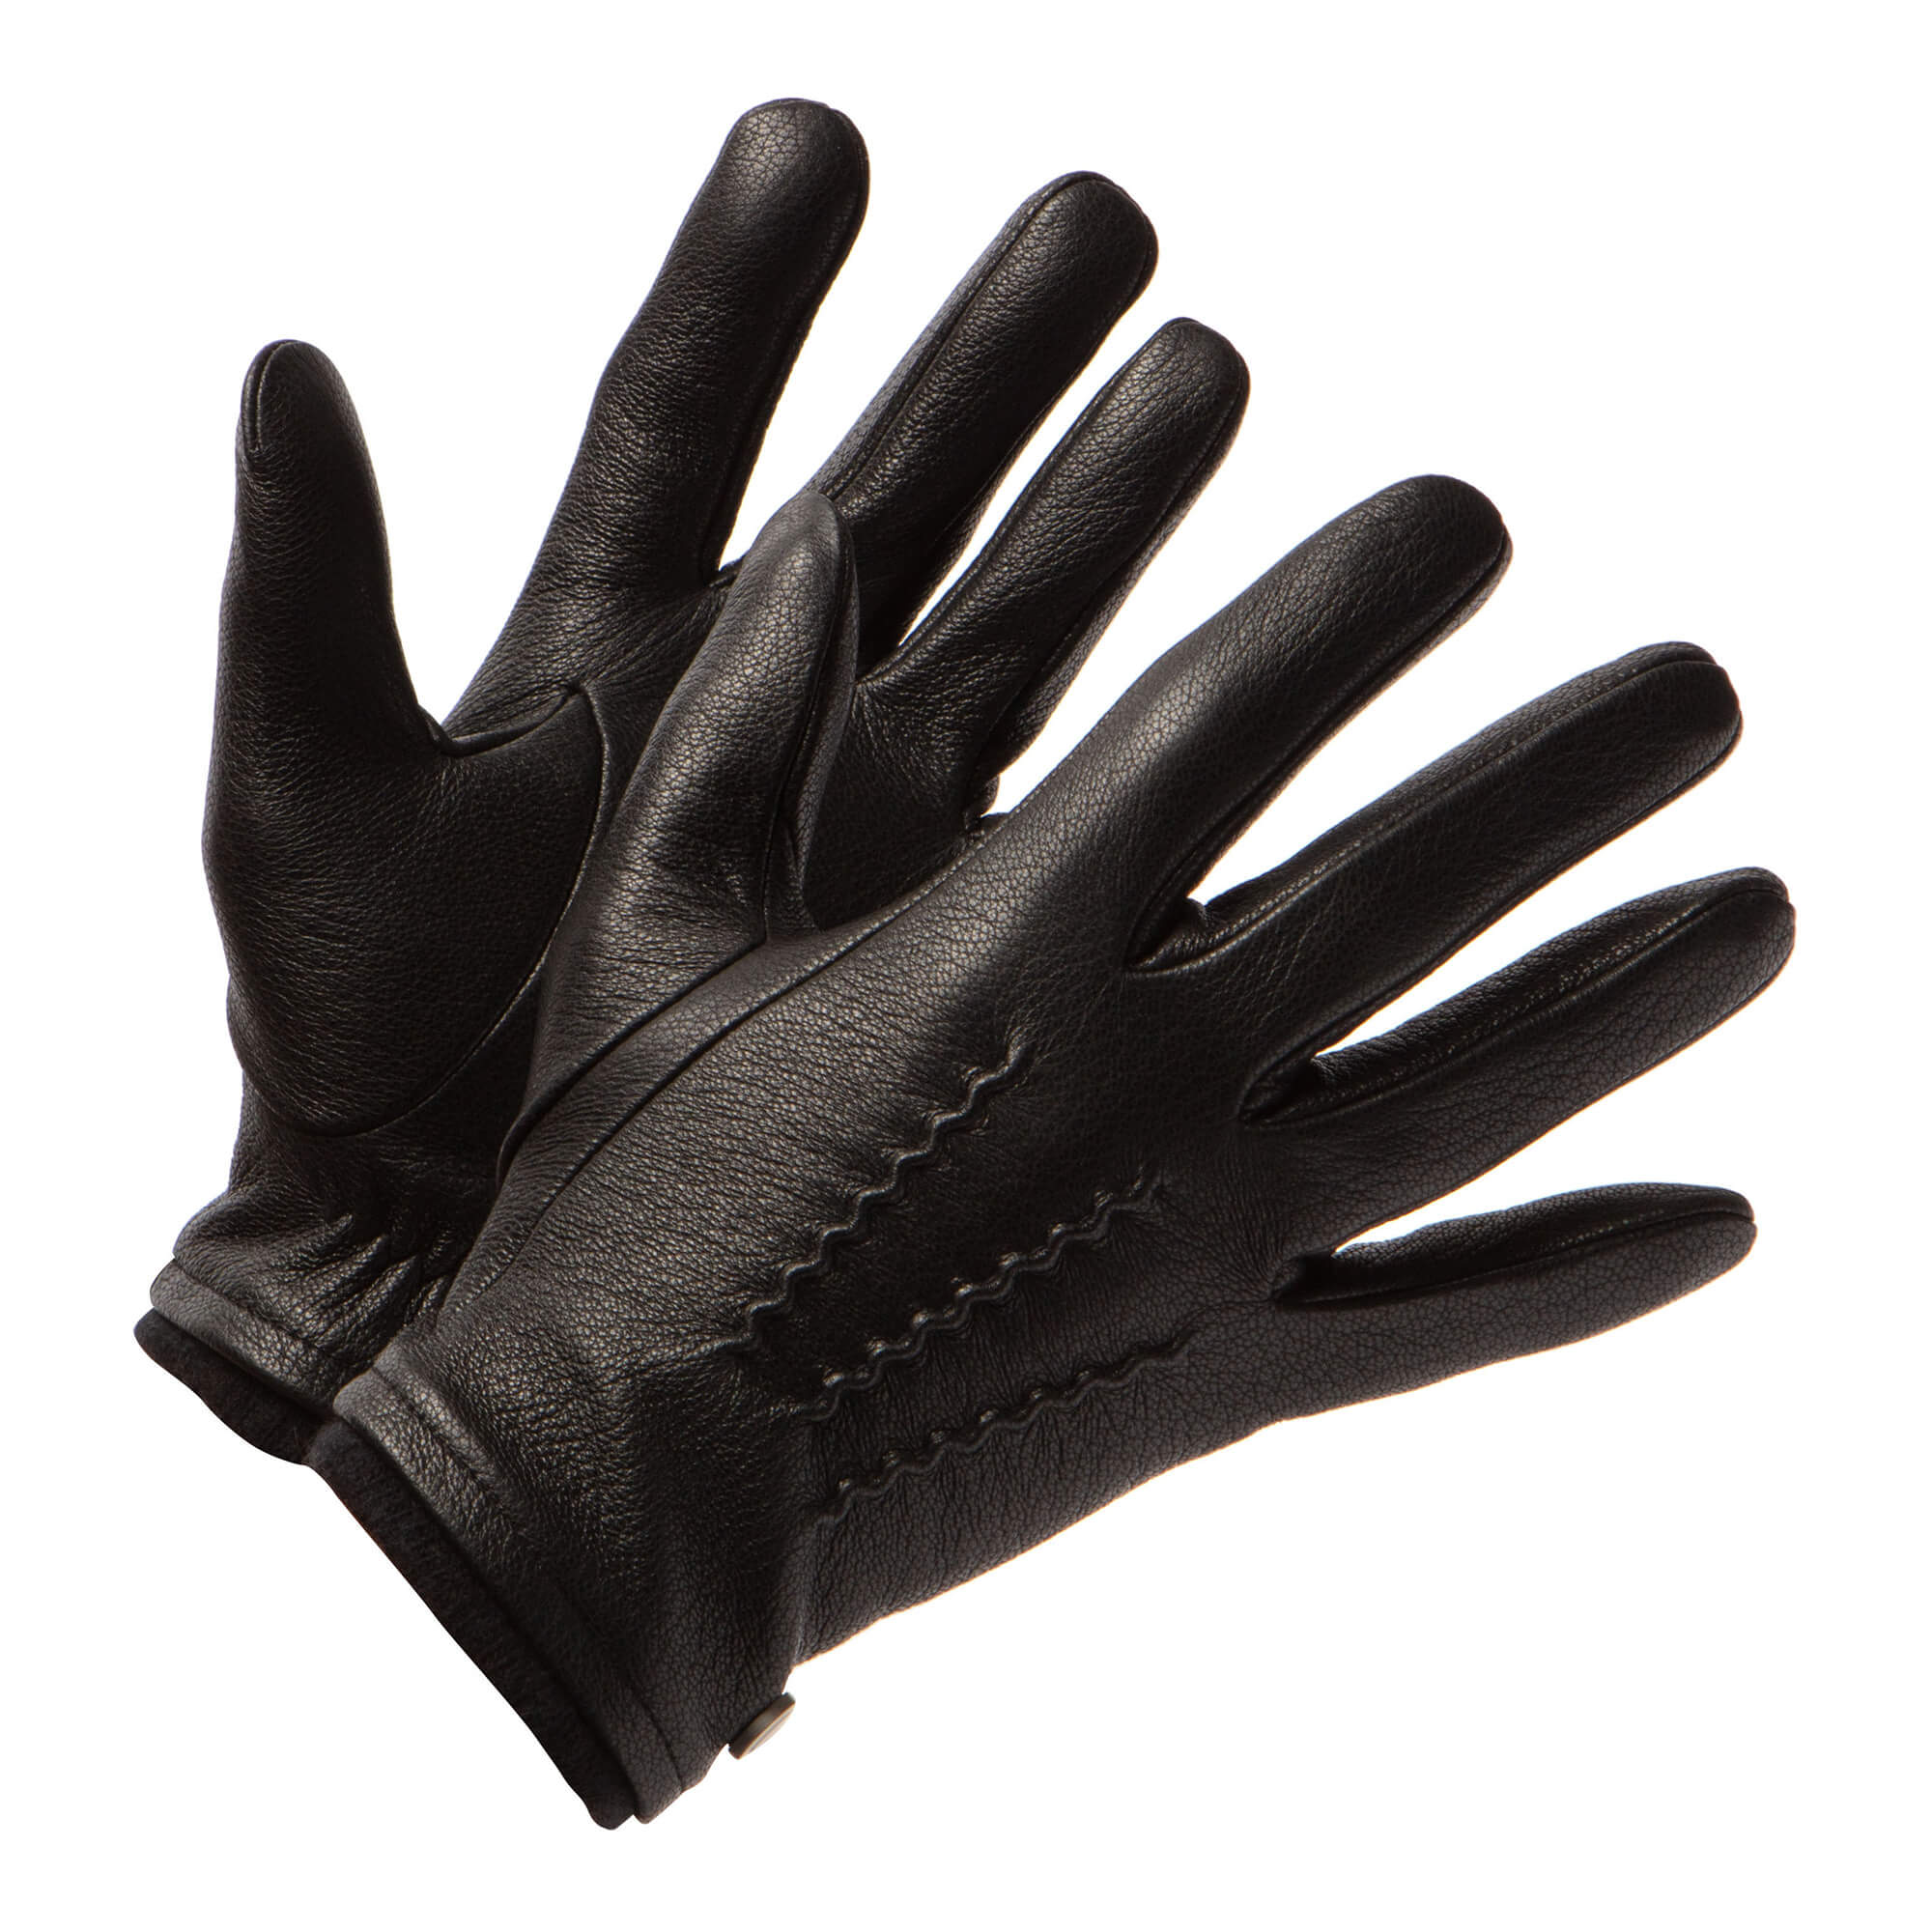 Warme Winterhandschuhe Männer | James (Schwarz)- Ziegenlederhandschuhe für  Männer mit Wollfutter & Touchscreen-Funktion | Frickin